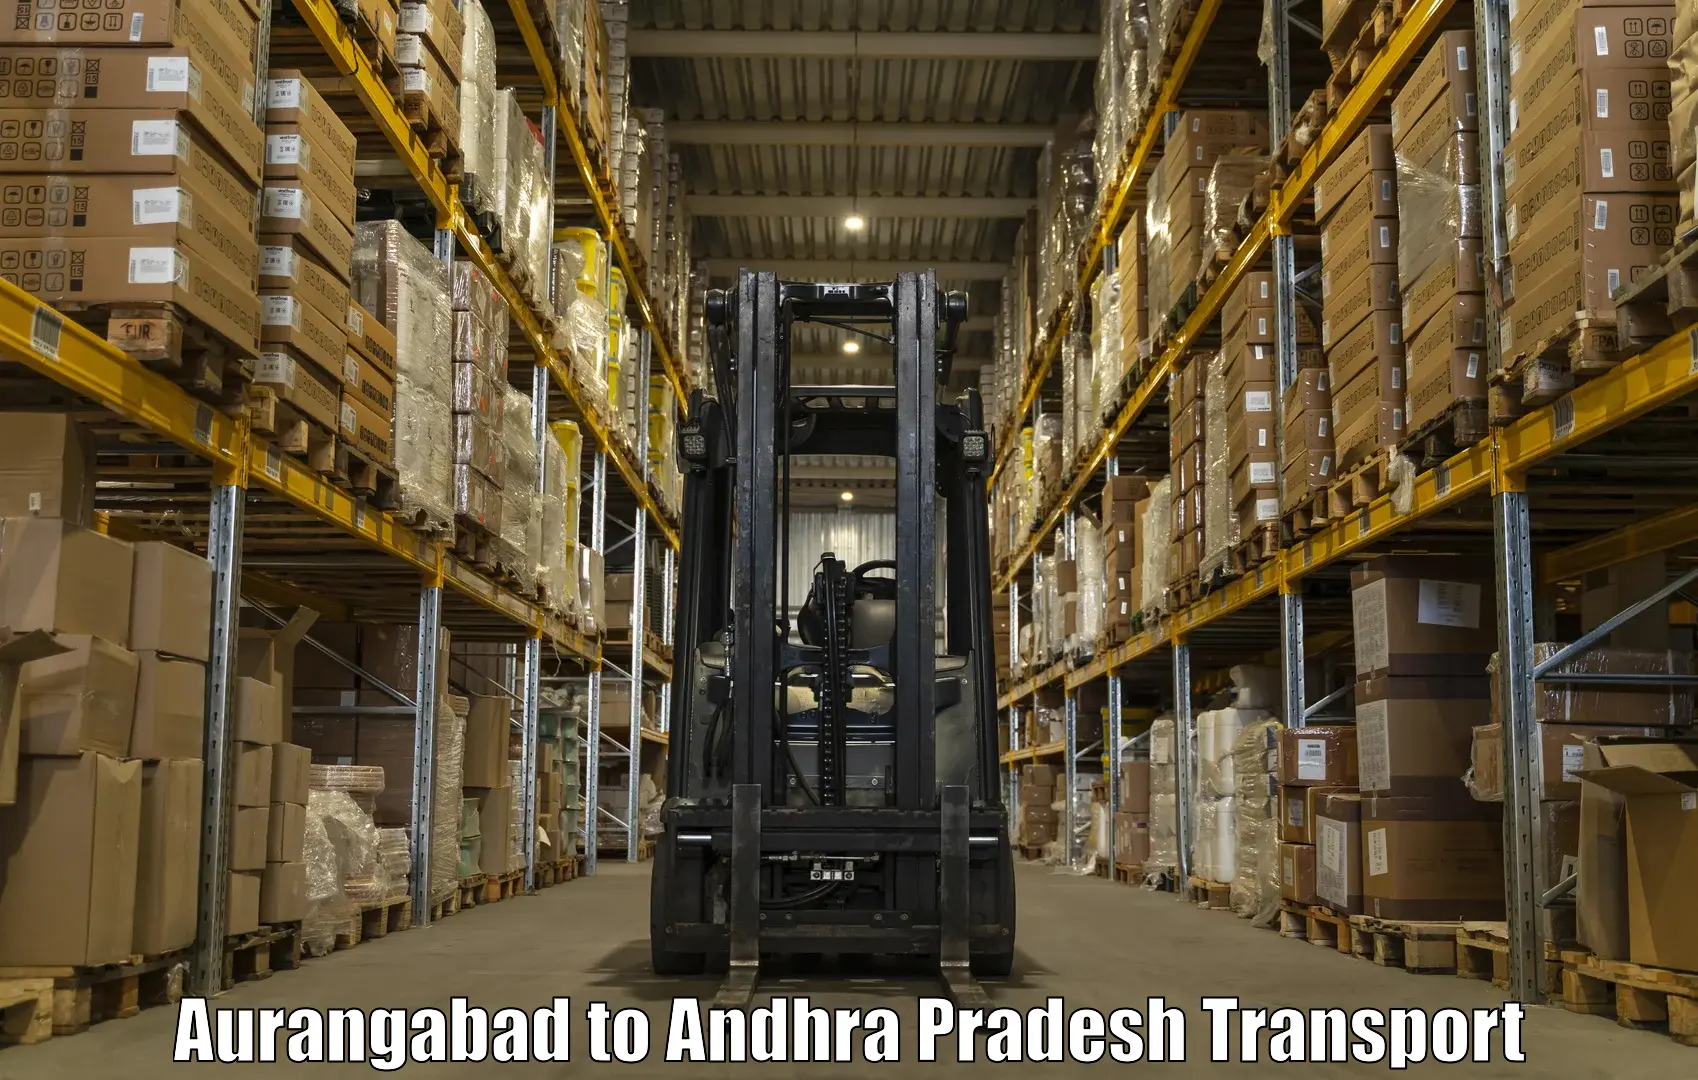 Road transport online services Aurangabad to Konthamuru